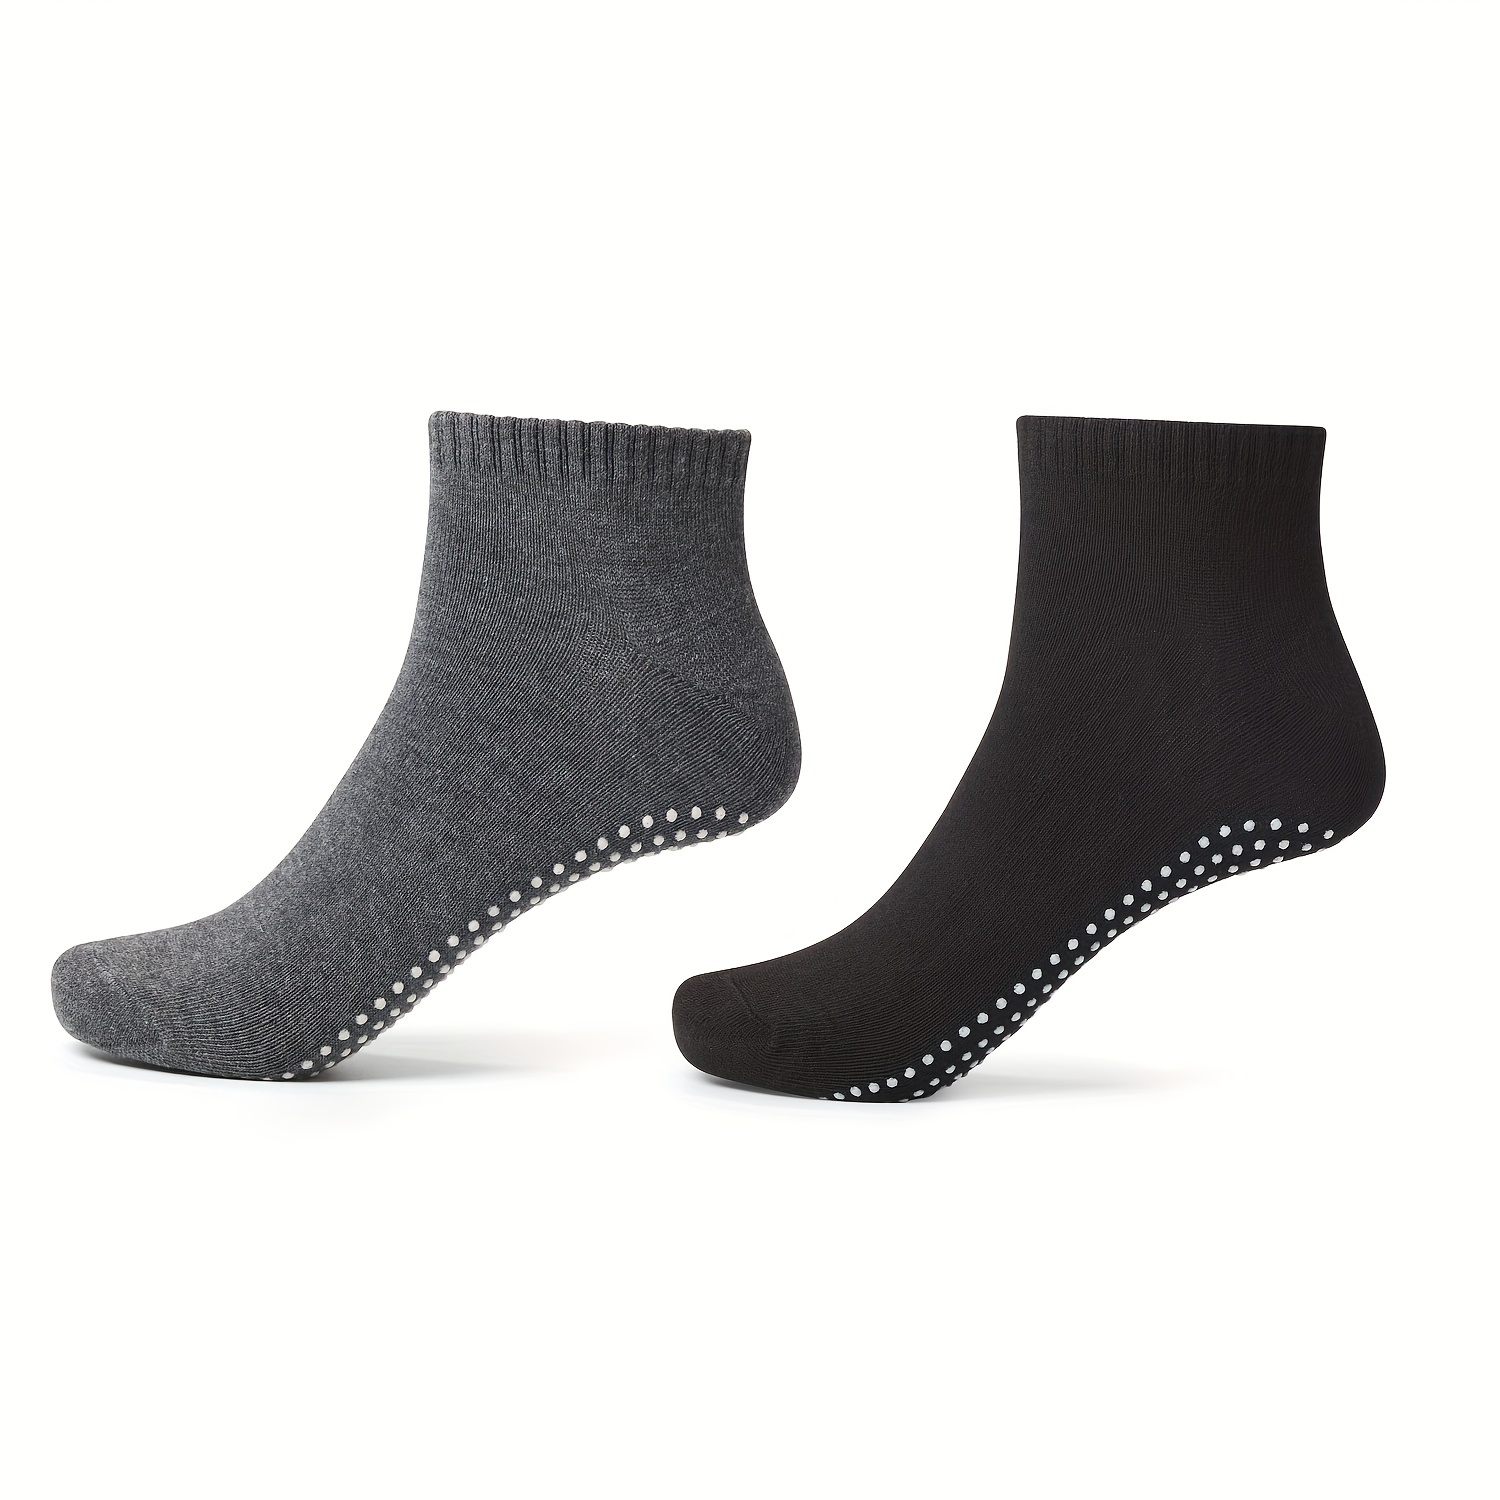 Buy Yoga Socks - Non Slip, Non Skid, Slip Resistant Toeless Grip Sock for  Women & Men doing Yoga and Pilates - Grey Medium Online at  desertcartSeychelles